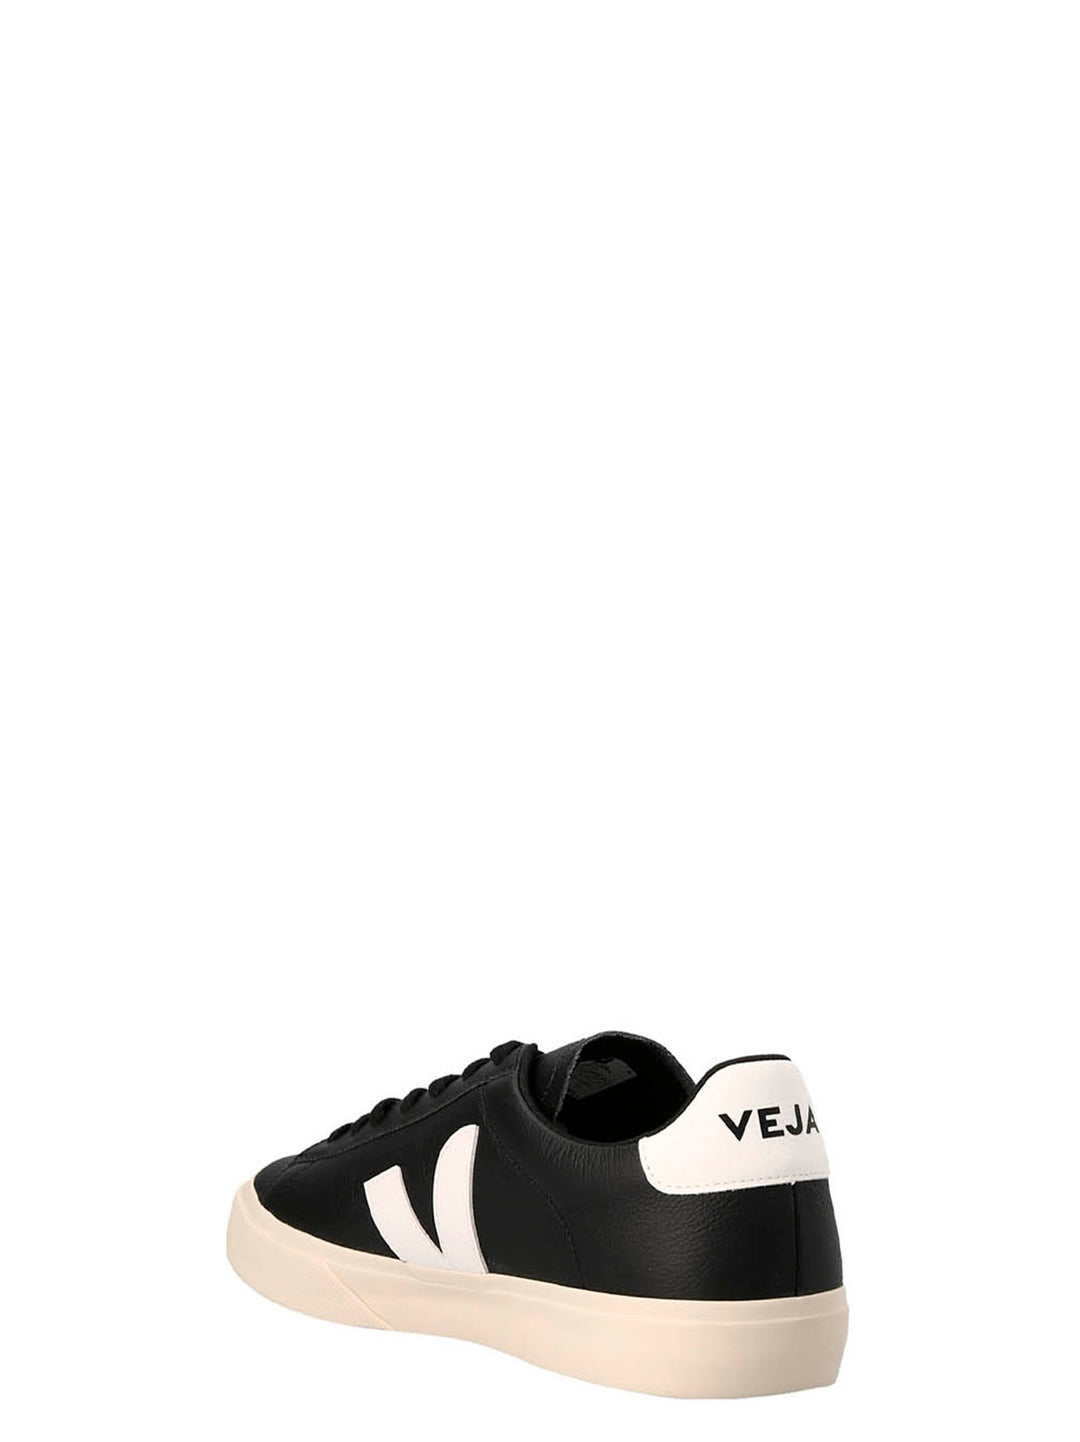 Campo Sneakers Bianco/Nero